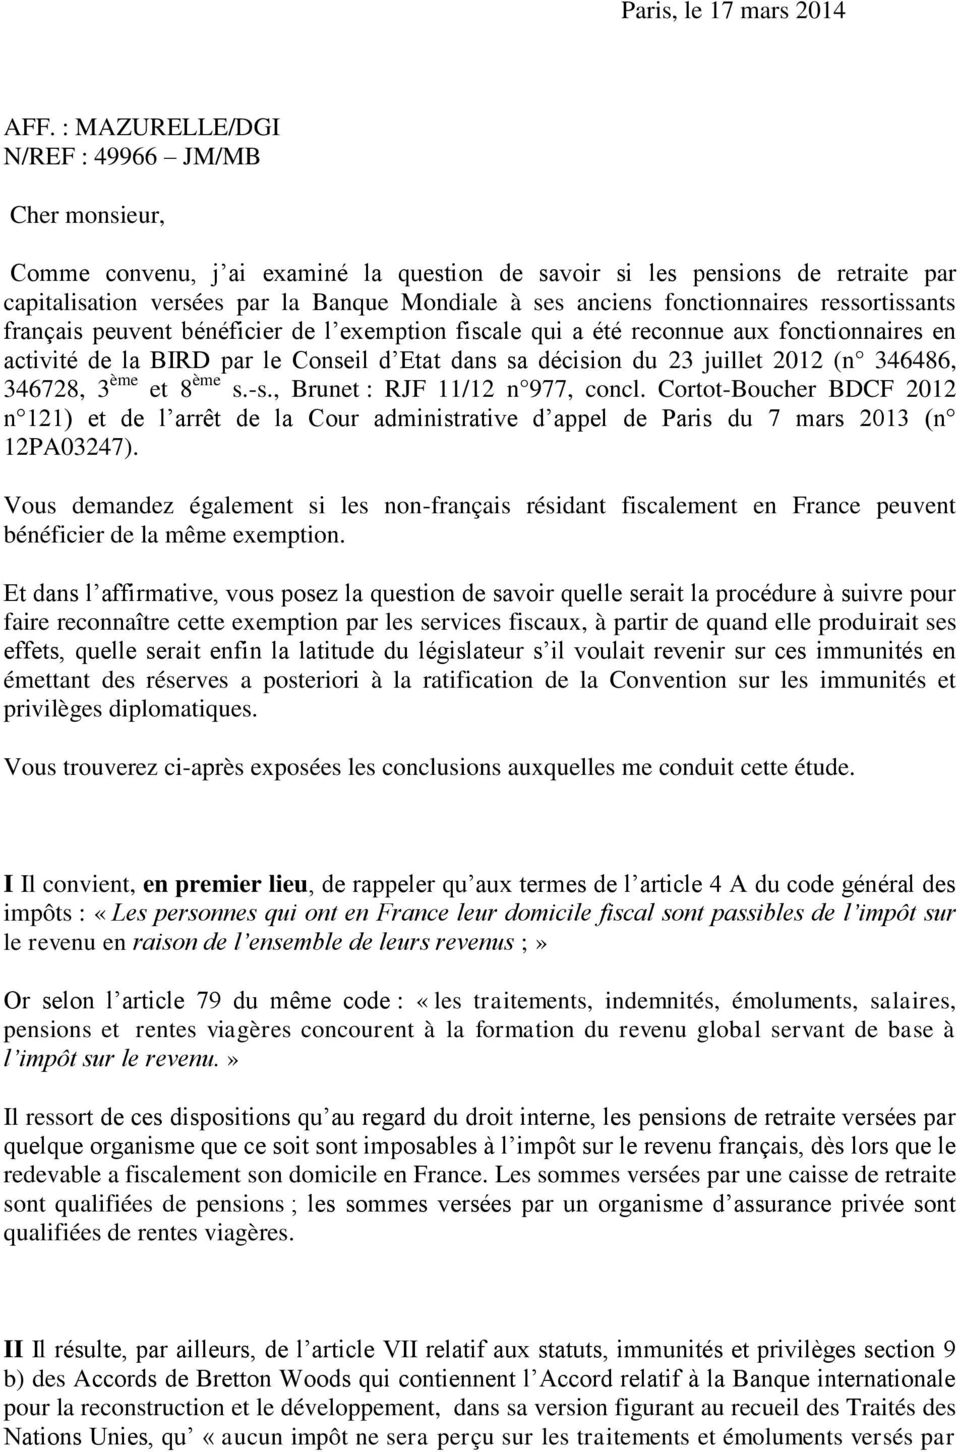 fonctionnaires ressortissants français peuvent bénéficier de l exemption fiscale qui a été reconnue aux fonctionnaires en activité de la BIRD par le Conseil d Etat dans sa décision du 23 juillet 2012